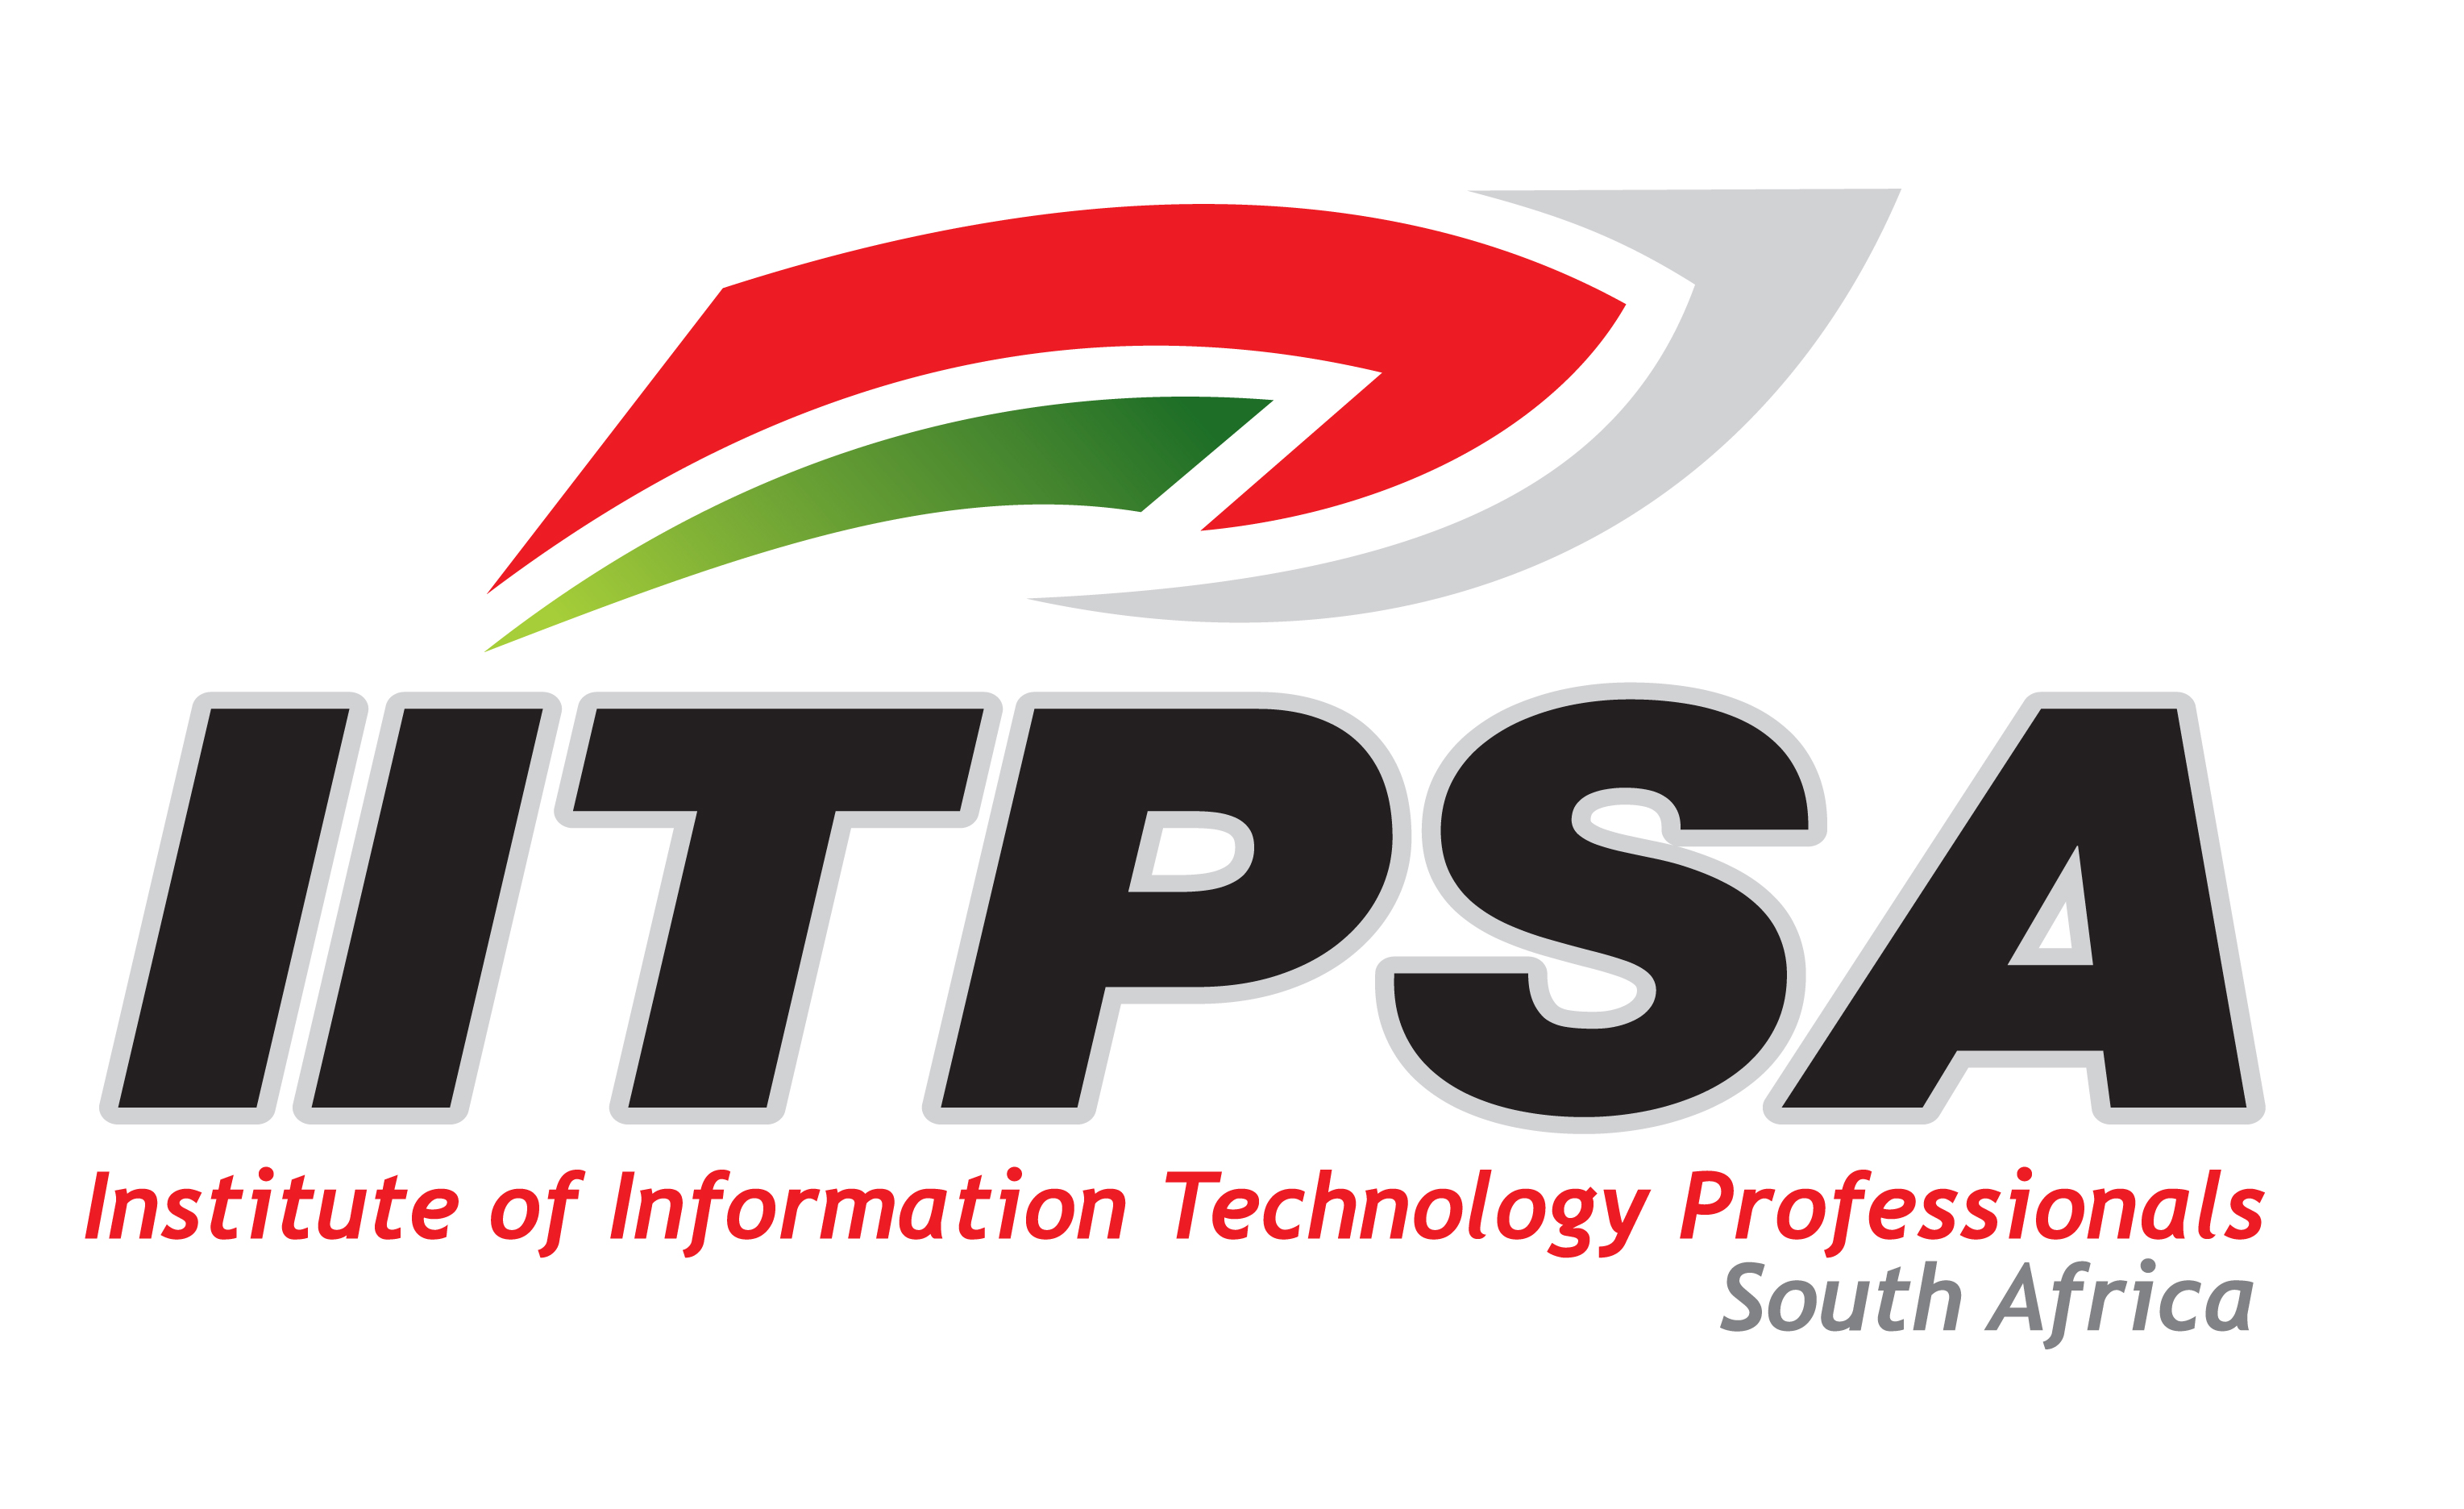 The IITPSA Needs You